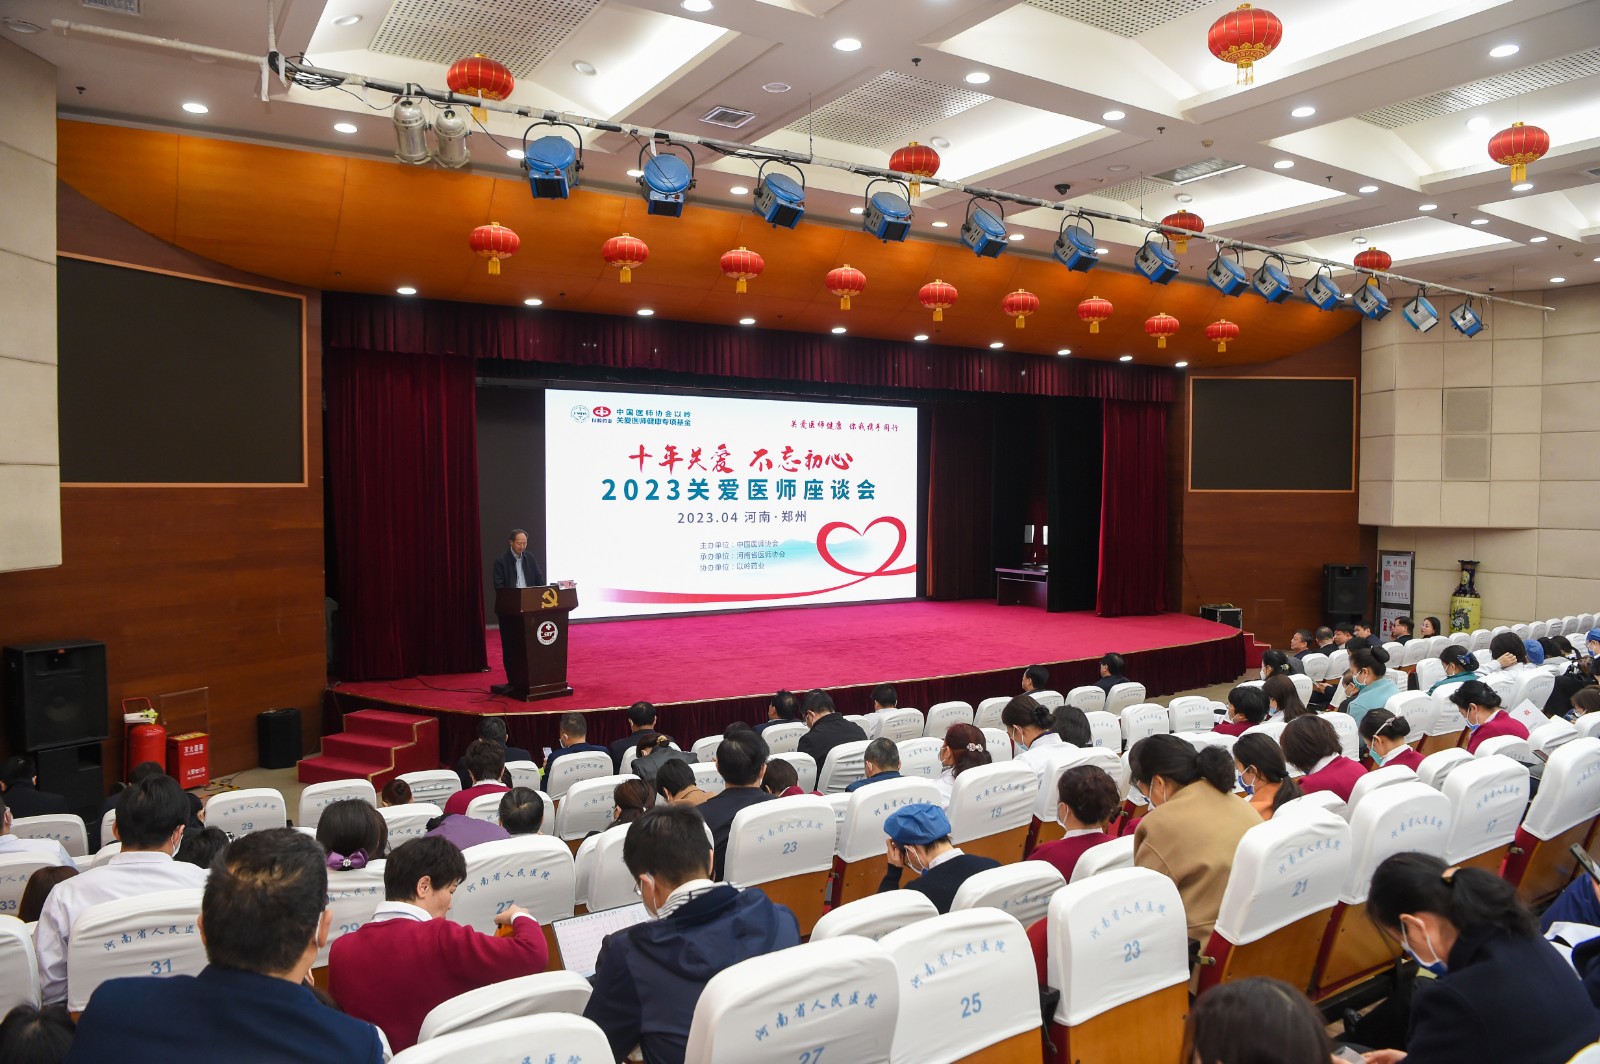 「十年關愛，初心不改」2023關愛醫師座談會在河南省舉行